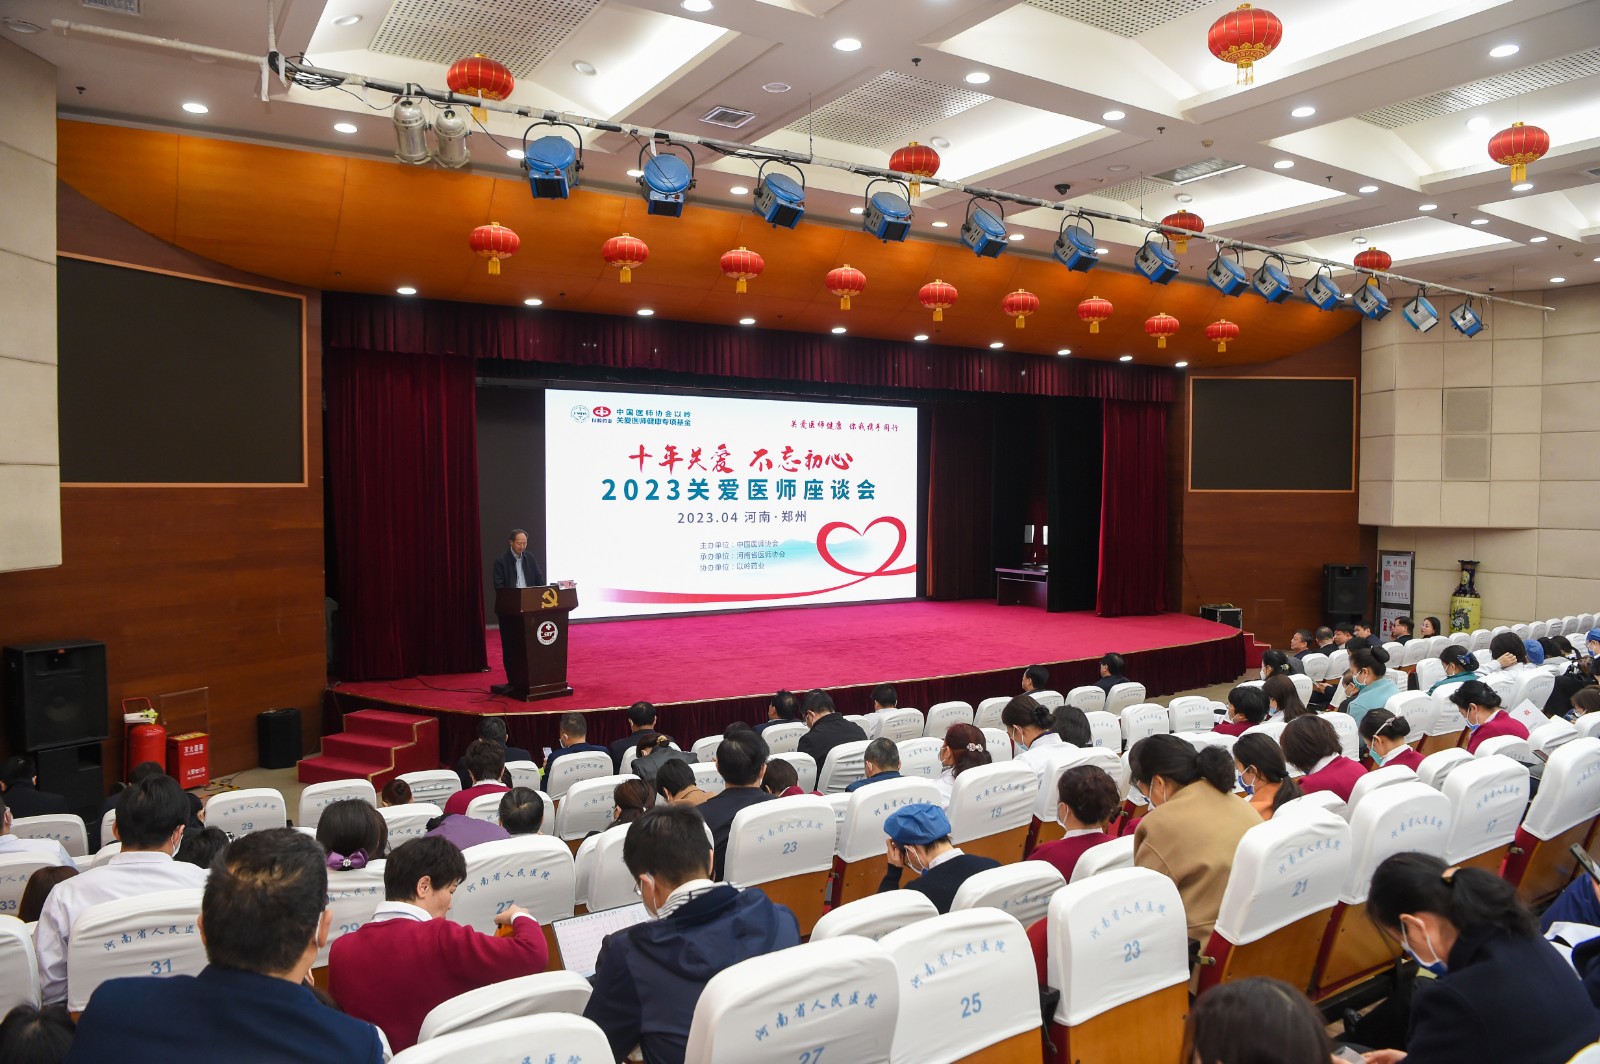 「十年關愛，初心不改」2023關愛醫師座談會在河南省舉行